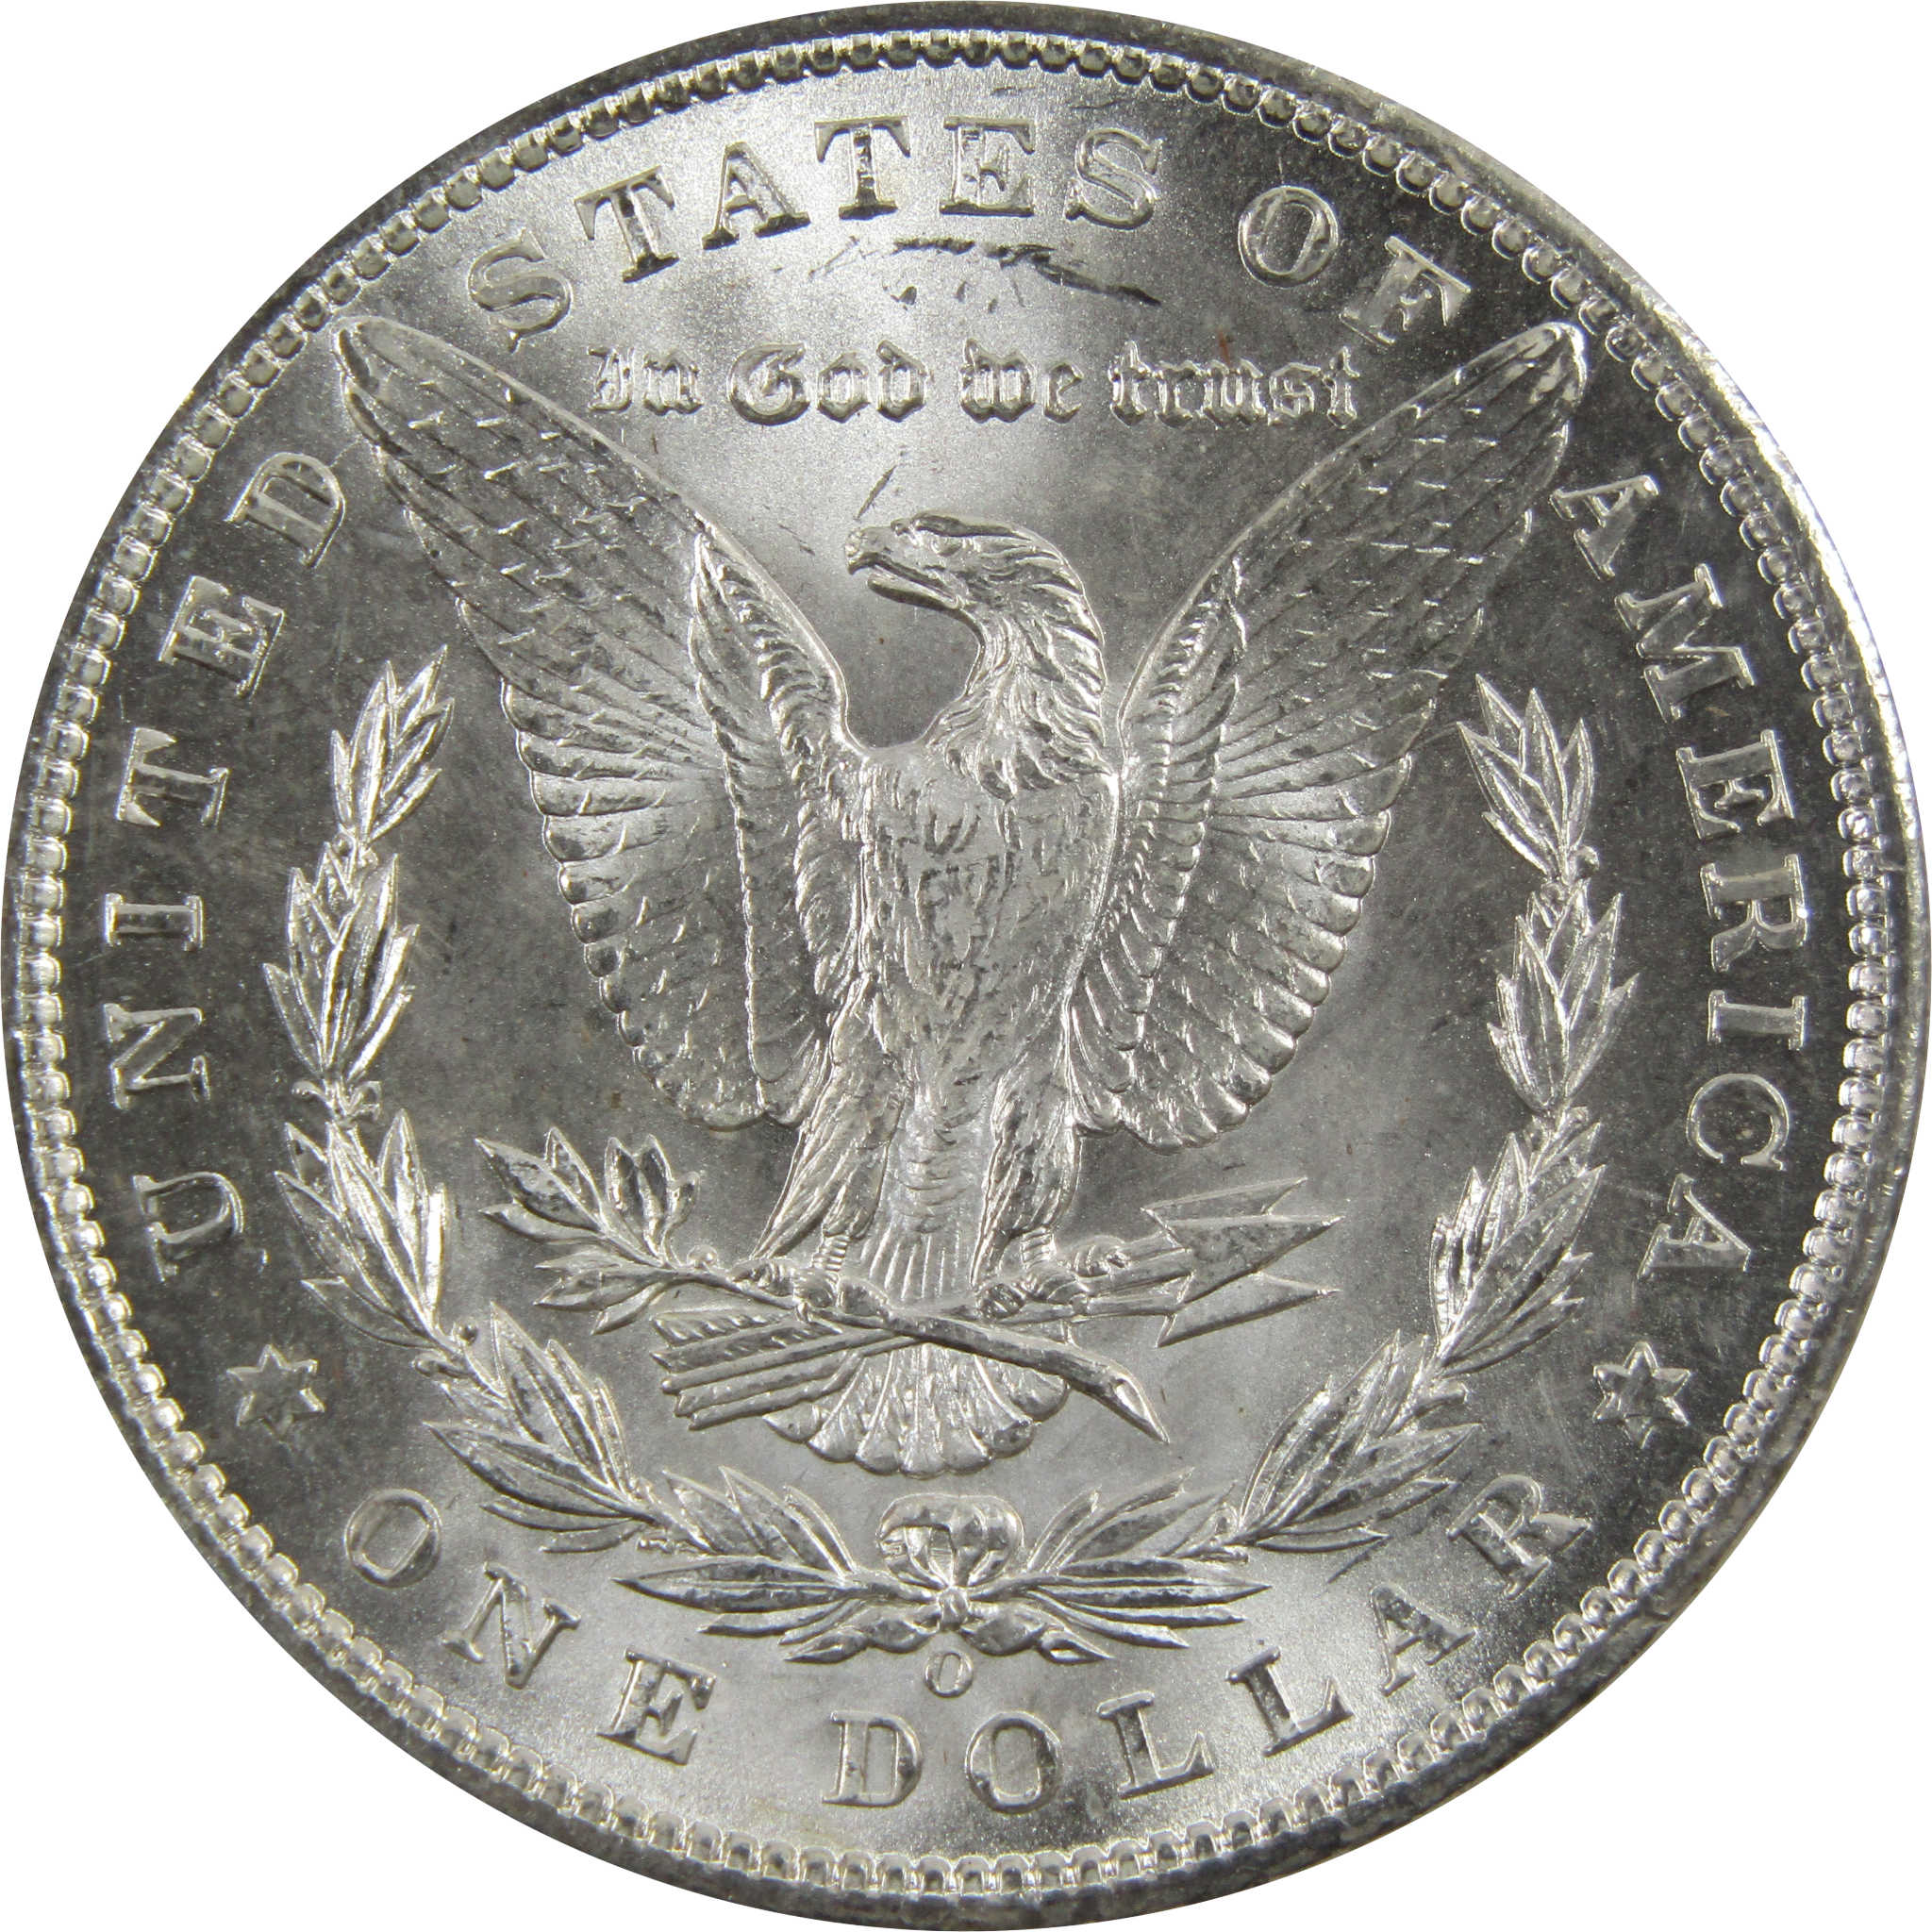 1898 O Morgan Dollar BU Uncirculated 90% Silver $1 Coin SKU:I5294 - Morgan coin - Morgan silver dollar - Morgan silver dollar for sale - Profile Coins &amp; Collectibles